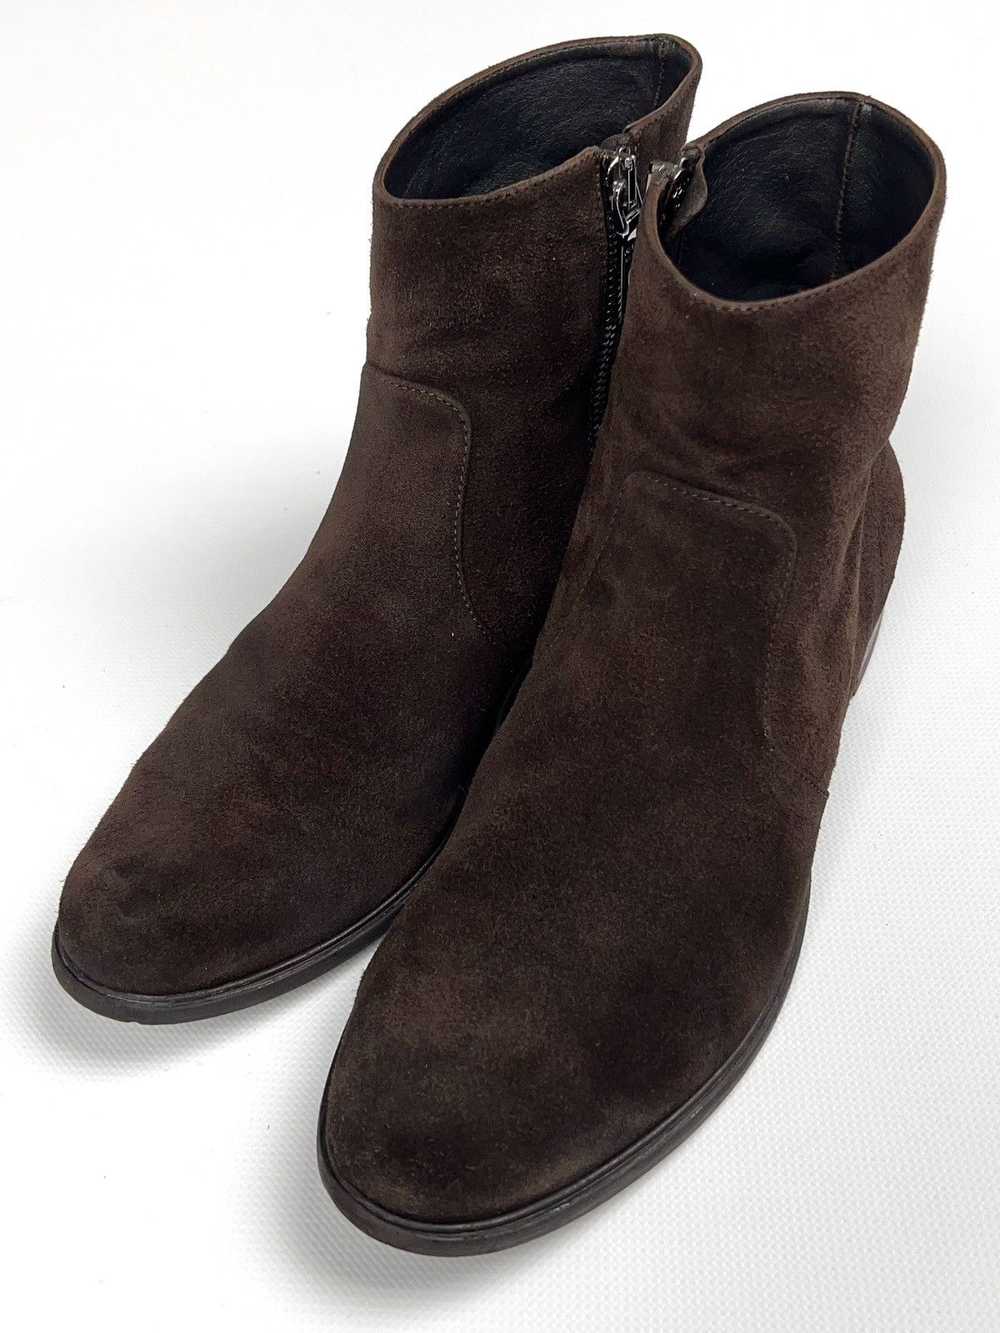 Prada Prada Brown Suede Zip Western Boots Vintage - image 2